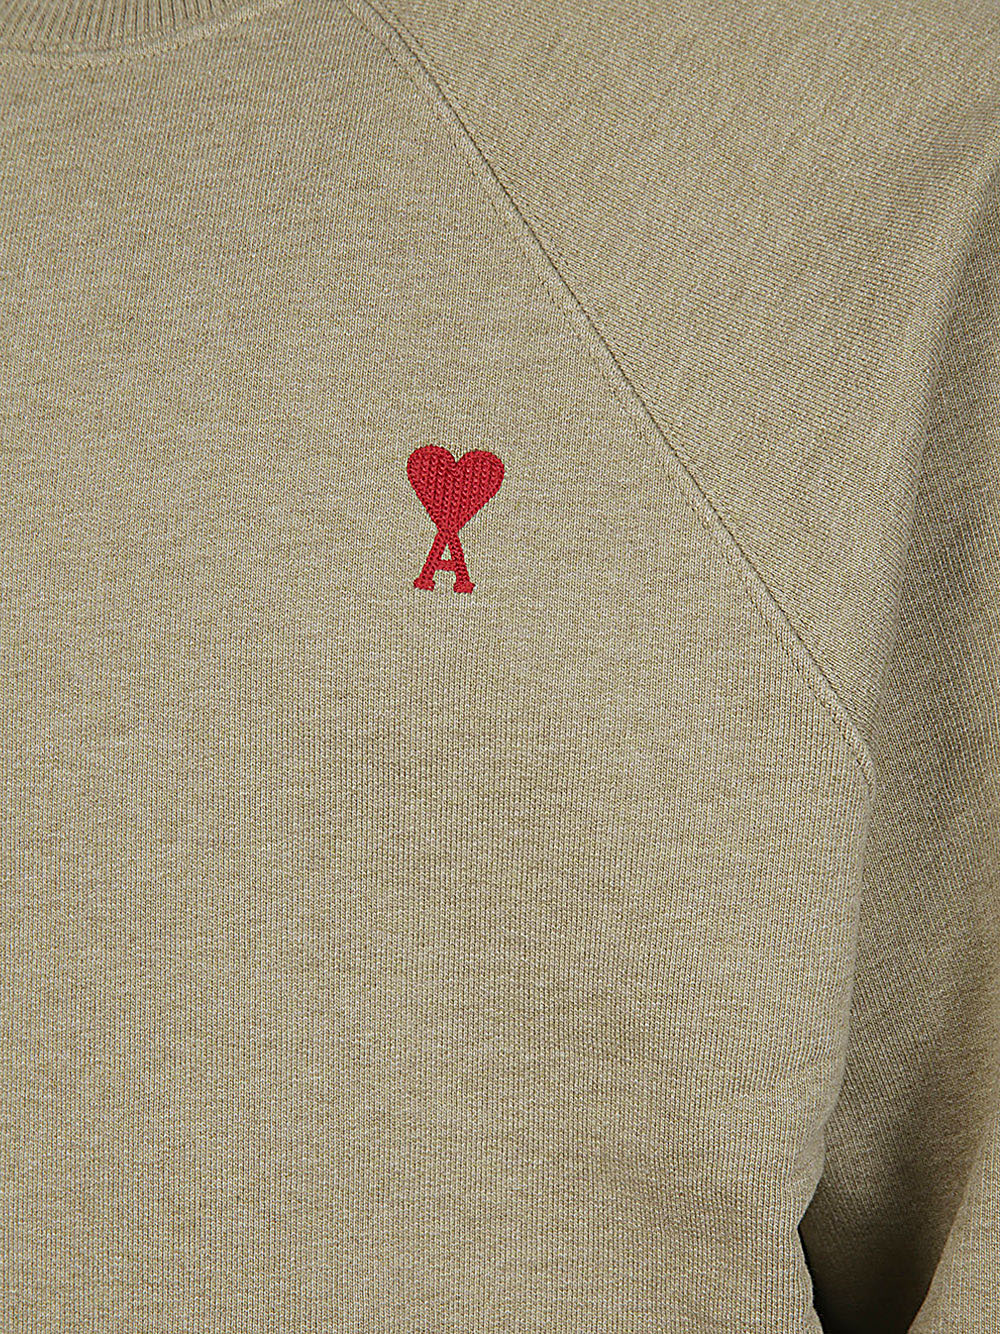 Ami Paris AMI PARIS- Sweatshirt With Logo